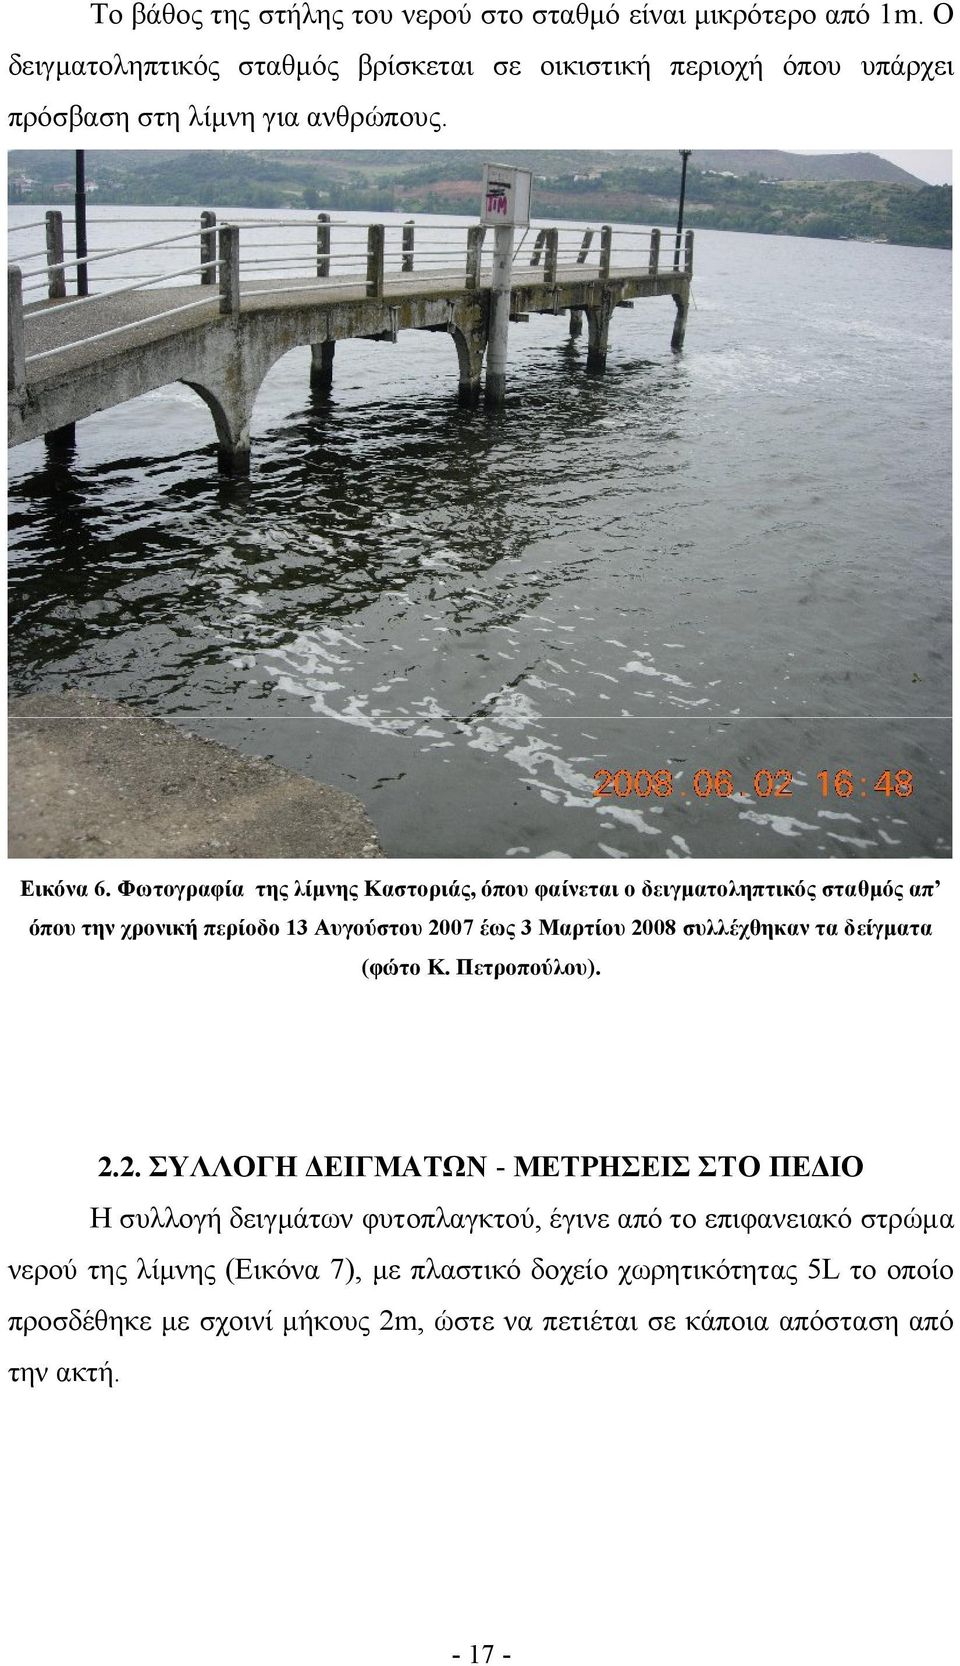 Φωτογραφία της λίμνης Καστοριάς, όπου φαίνεται ο δειγματοληπτικός σταθμός απ όπου την χρονική περίοδο 13 Αυγούστου 2007 έως 3 Μαρτίου 2008 συλλέχθηκαν τα